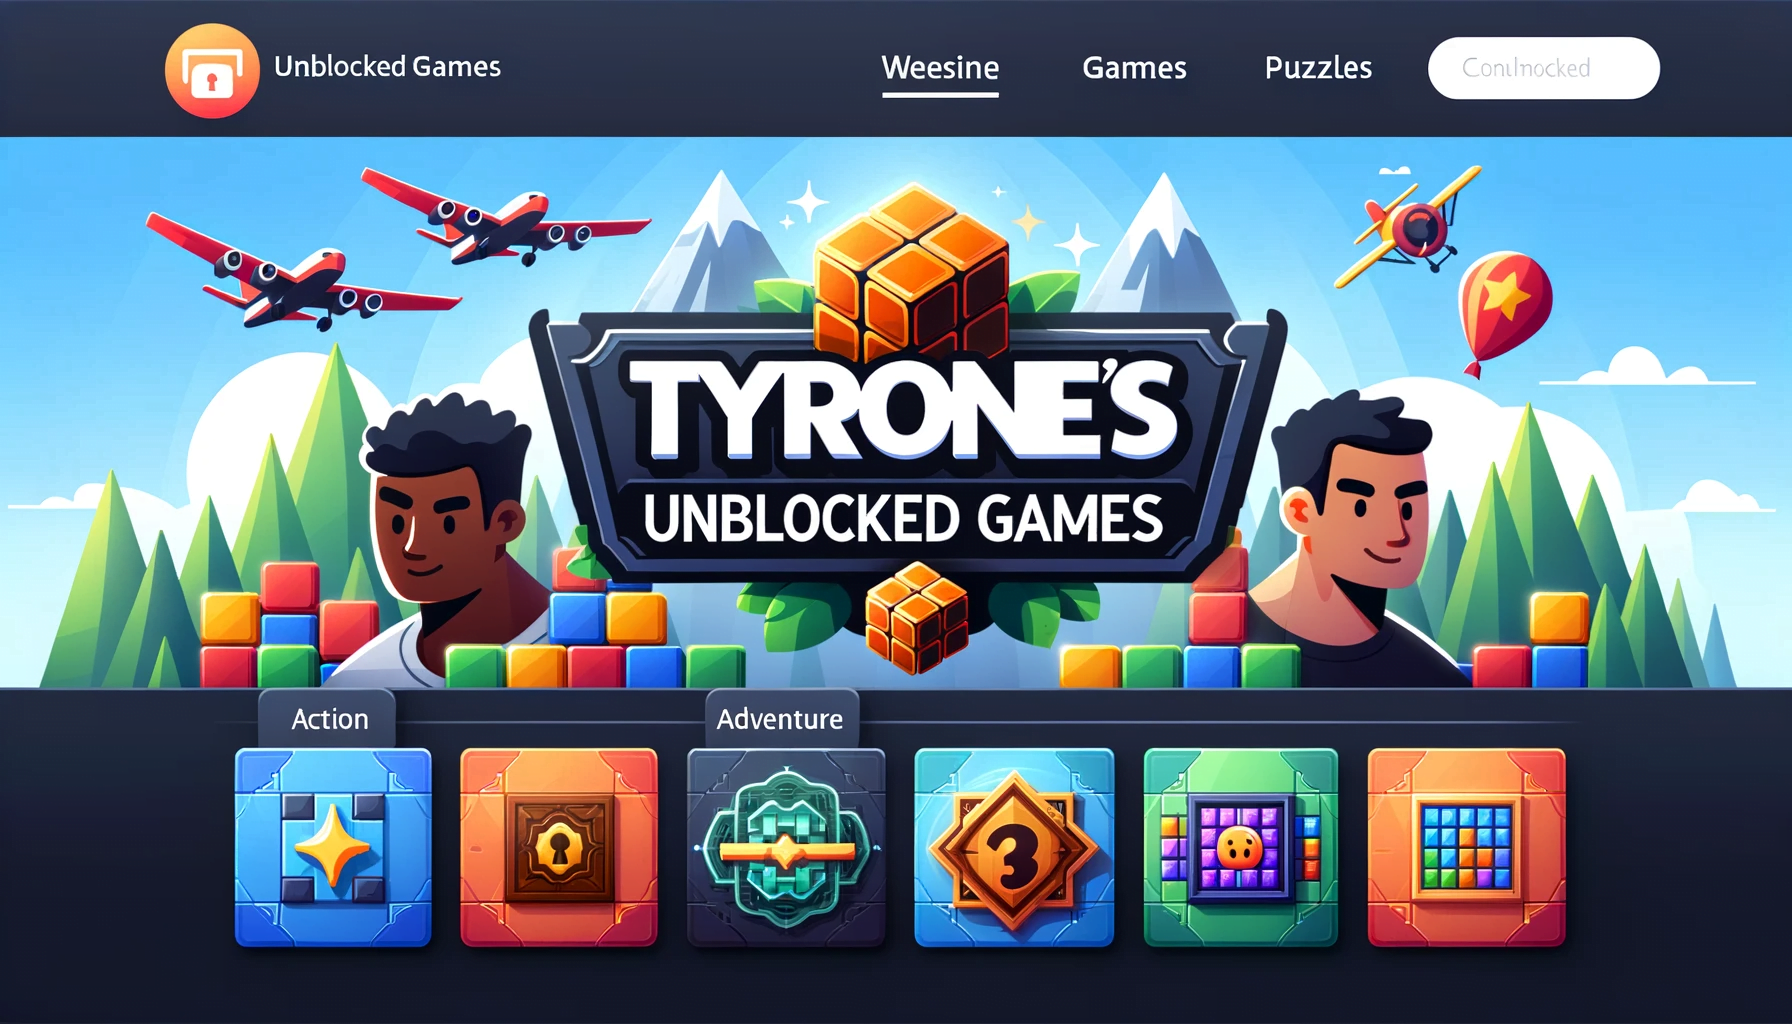 Unblocked Games - Full list